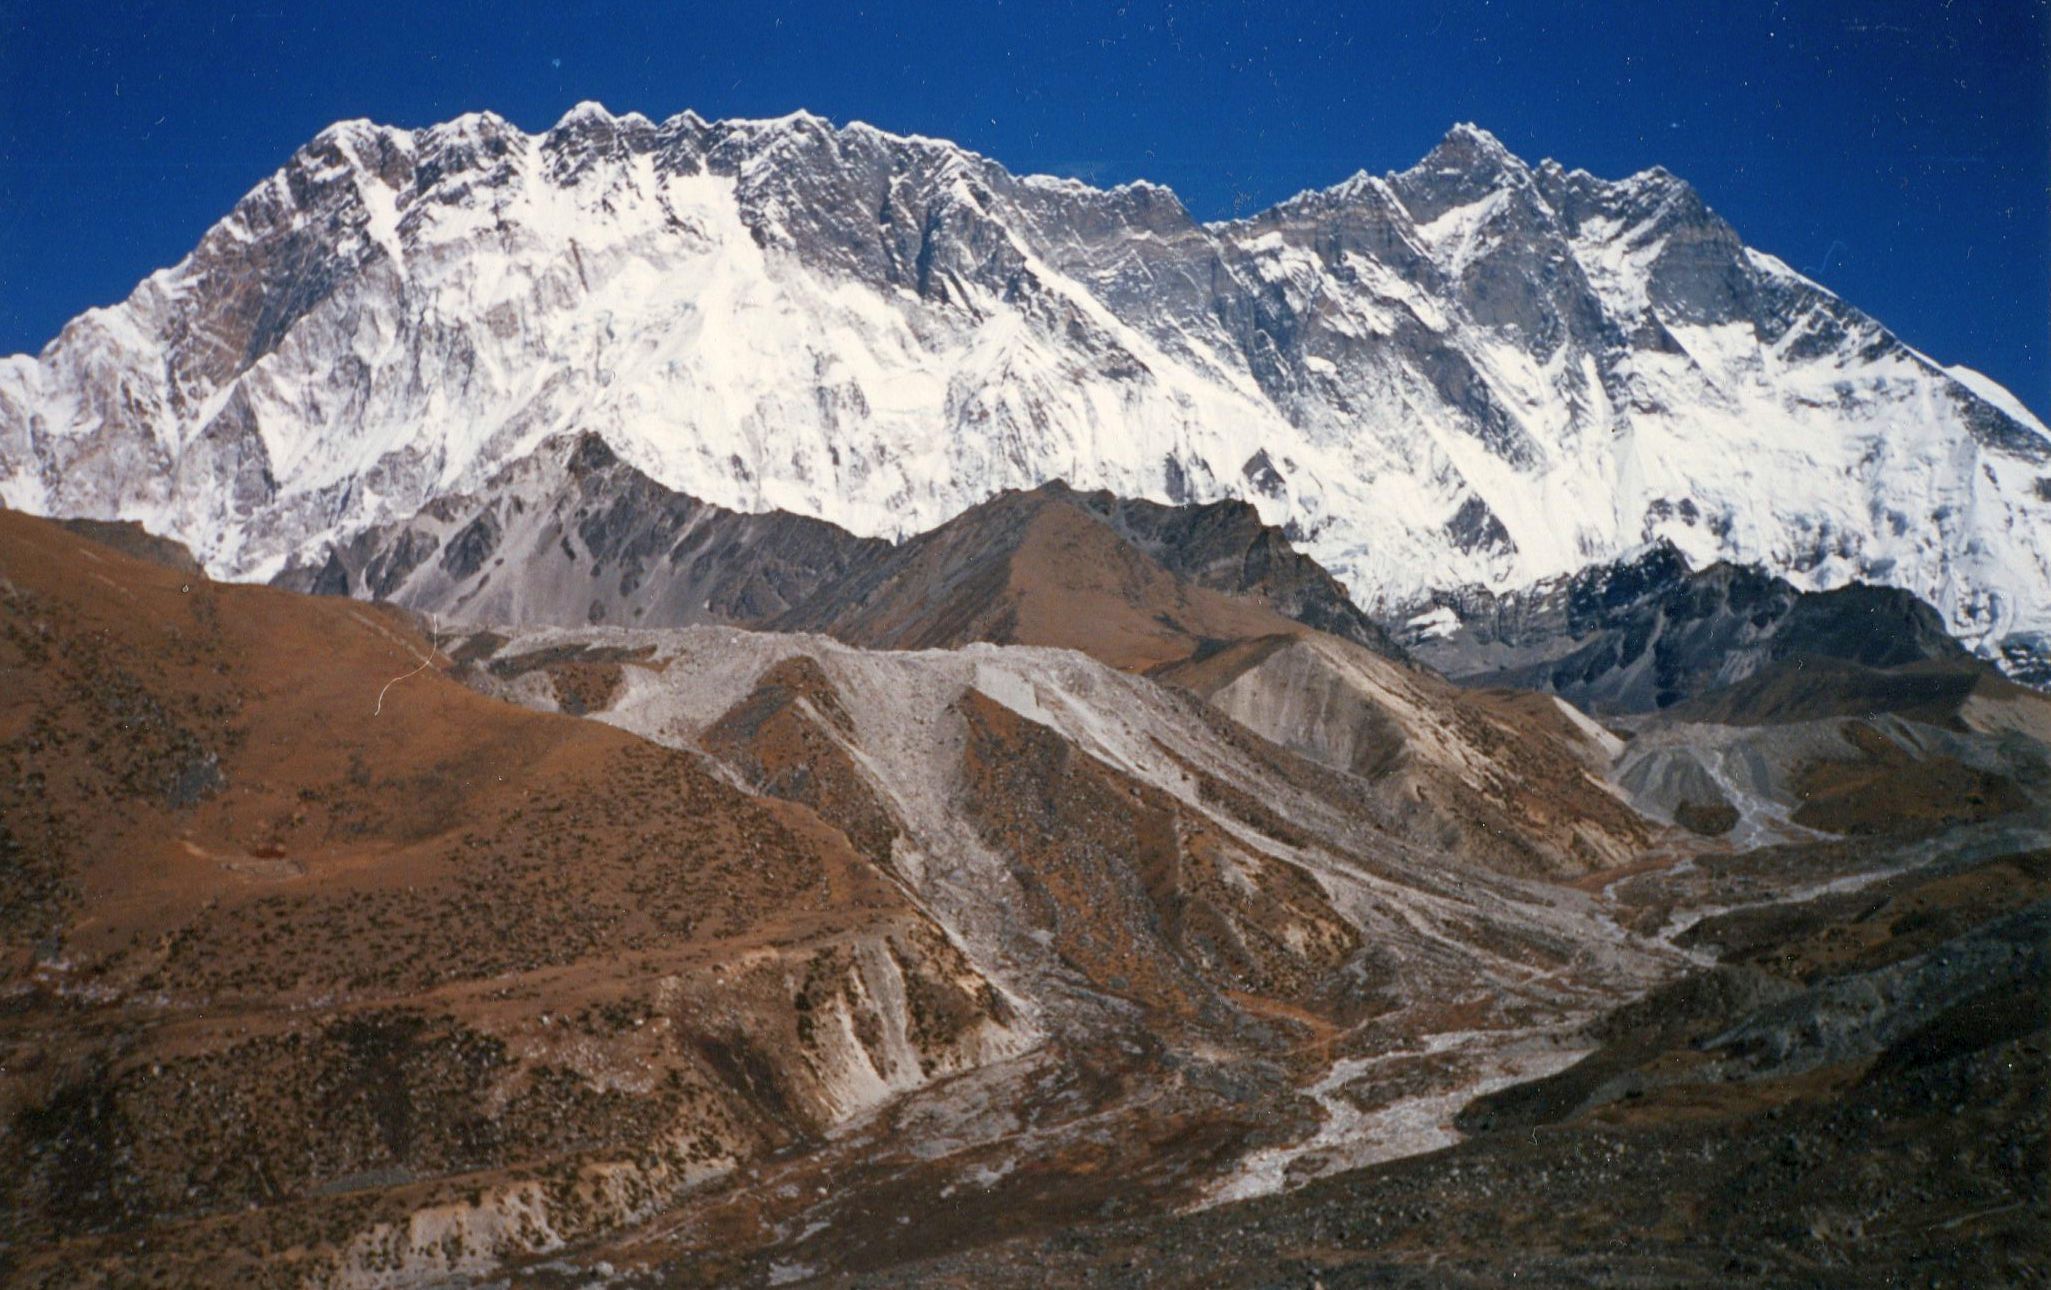 Nuptse-Lhotse Wall from Chukhung